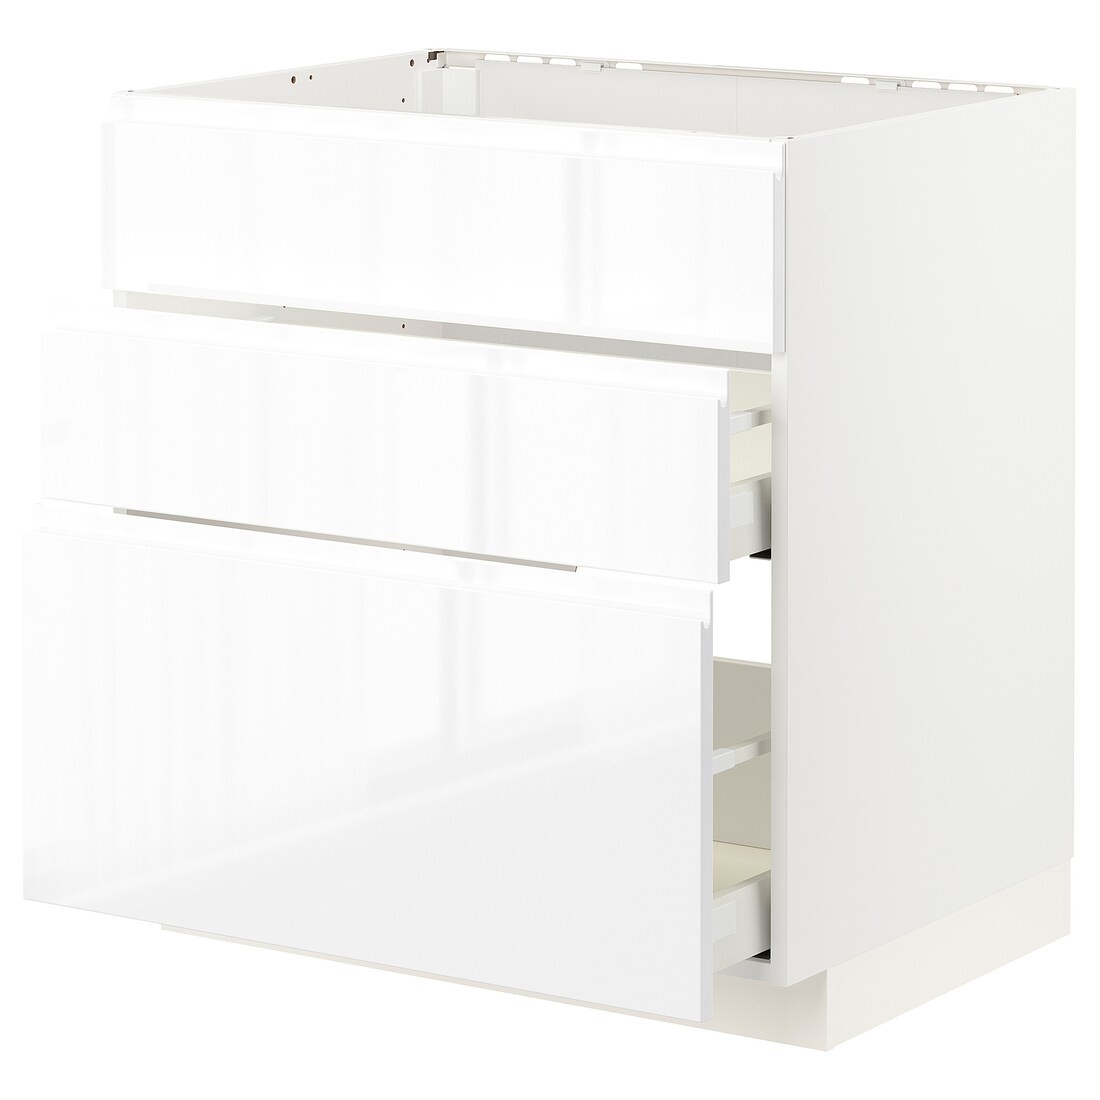 METOD МЕТОД / MAXIMERA МАКСИМЕРА Напольный шкаф для варочной панели / вытяжка с ящиком, белый / Voxtorp глянцевый / белый, 80x60 см